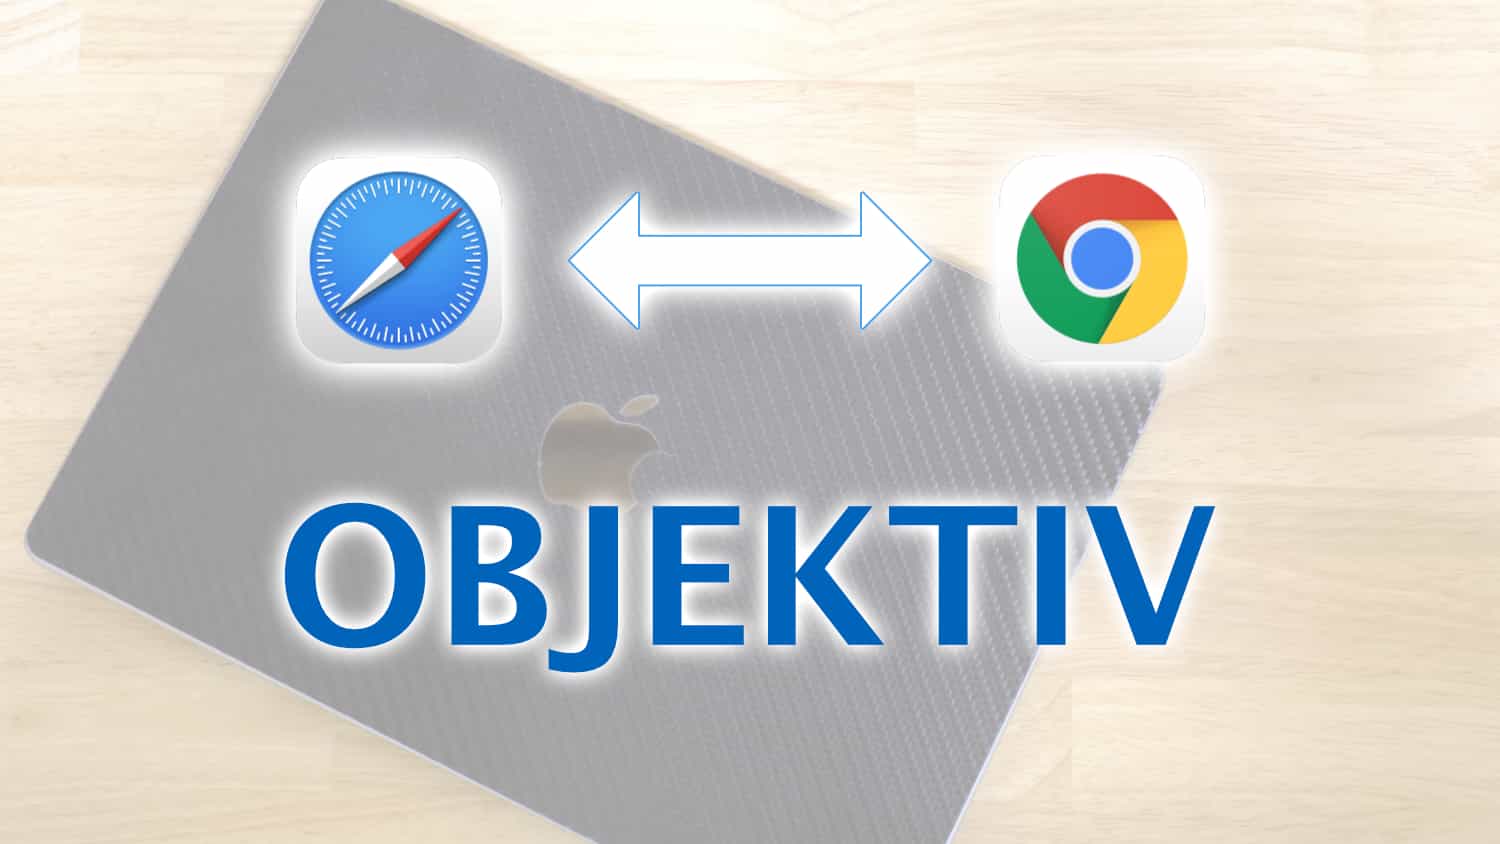 Macのデフォルトブラウザ設定をショートカットキーで切り替えられる「OBJEKTIV」が便利です
